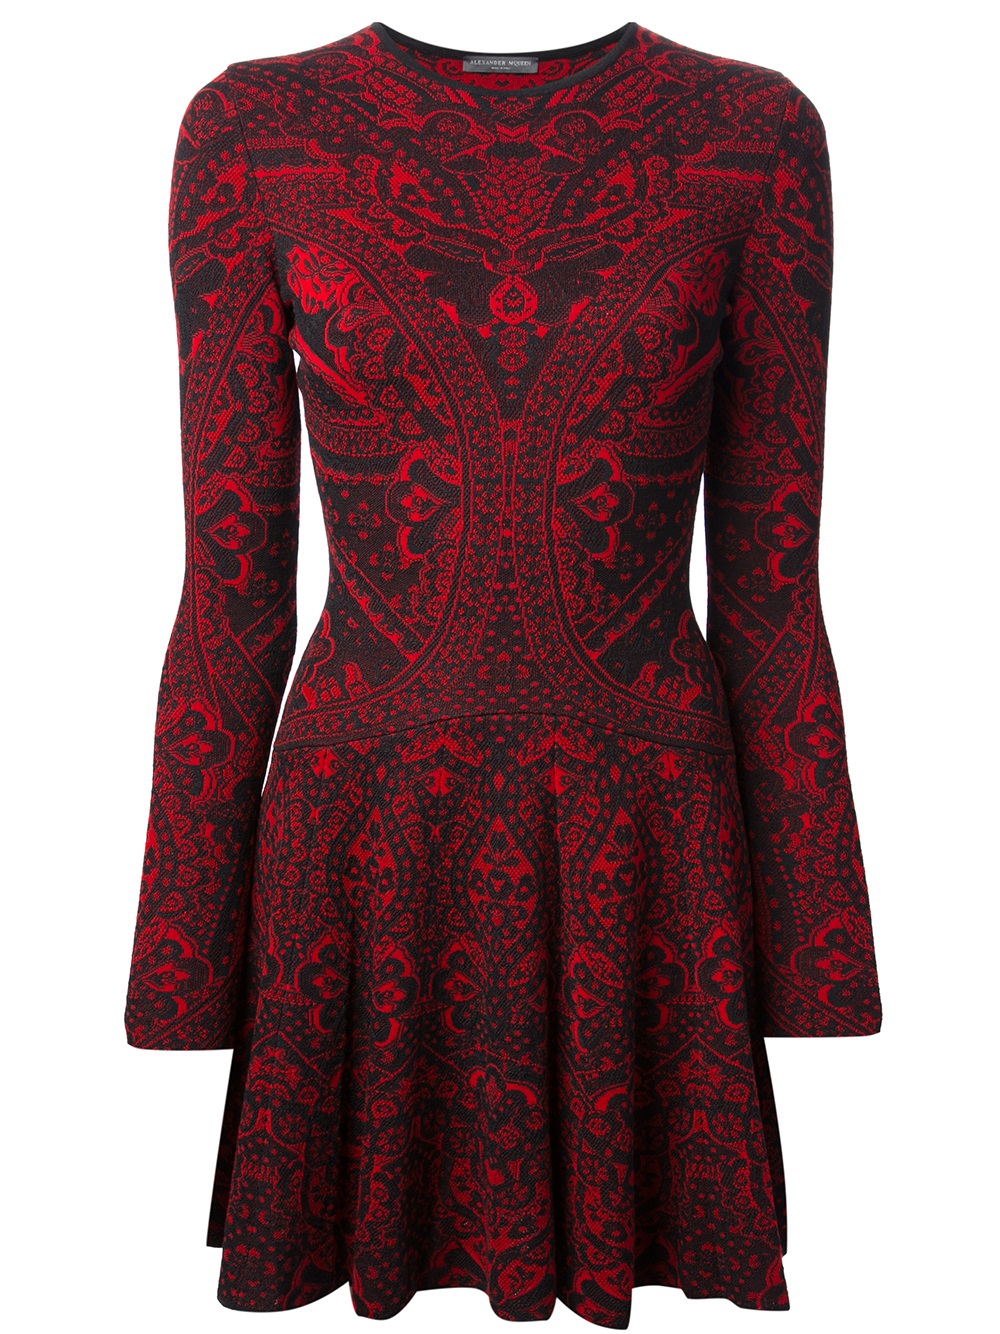 Lyst - Alexander mcqueen Baroque Woven Dress in Red